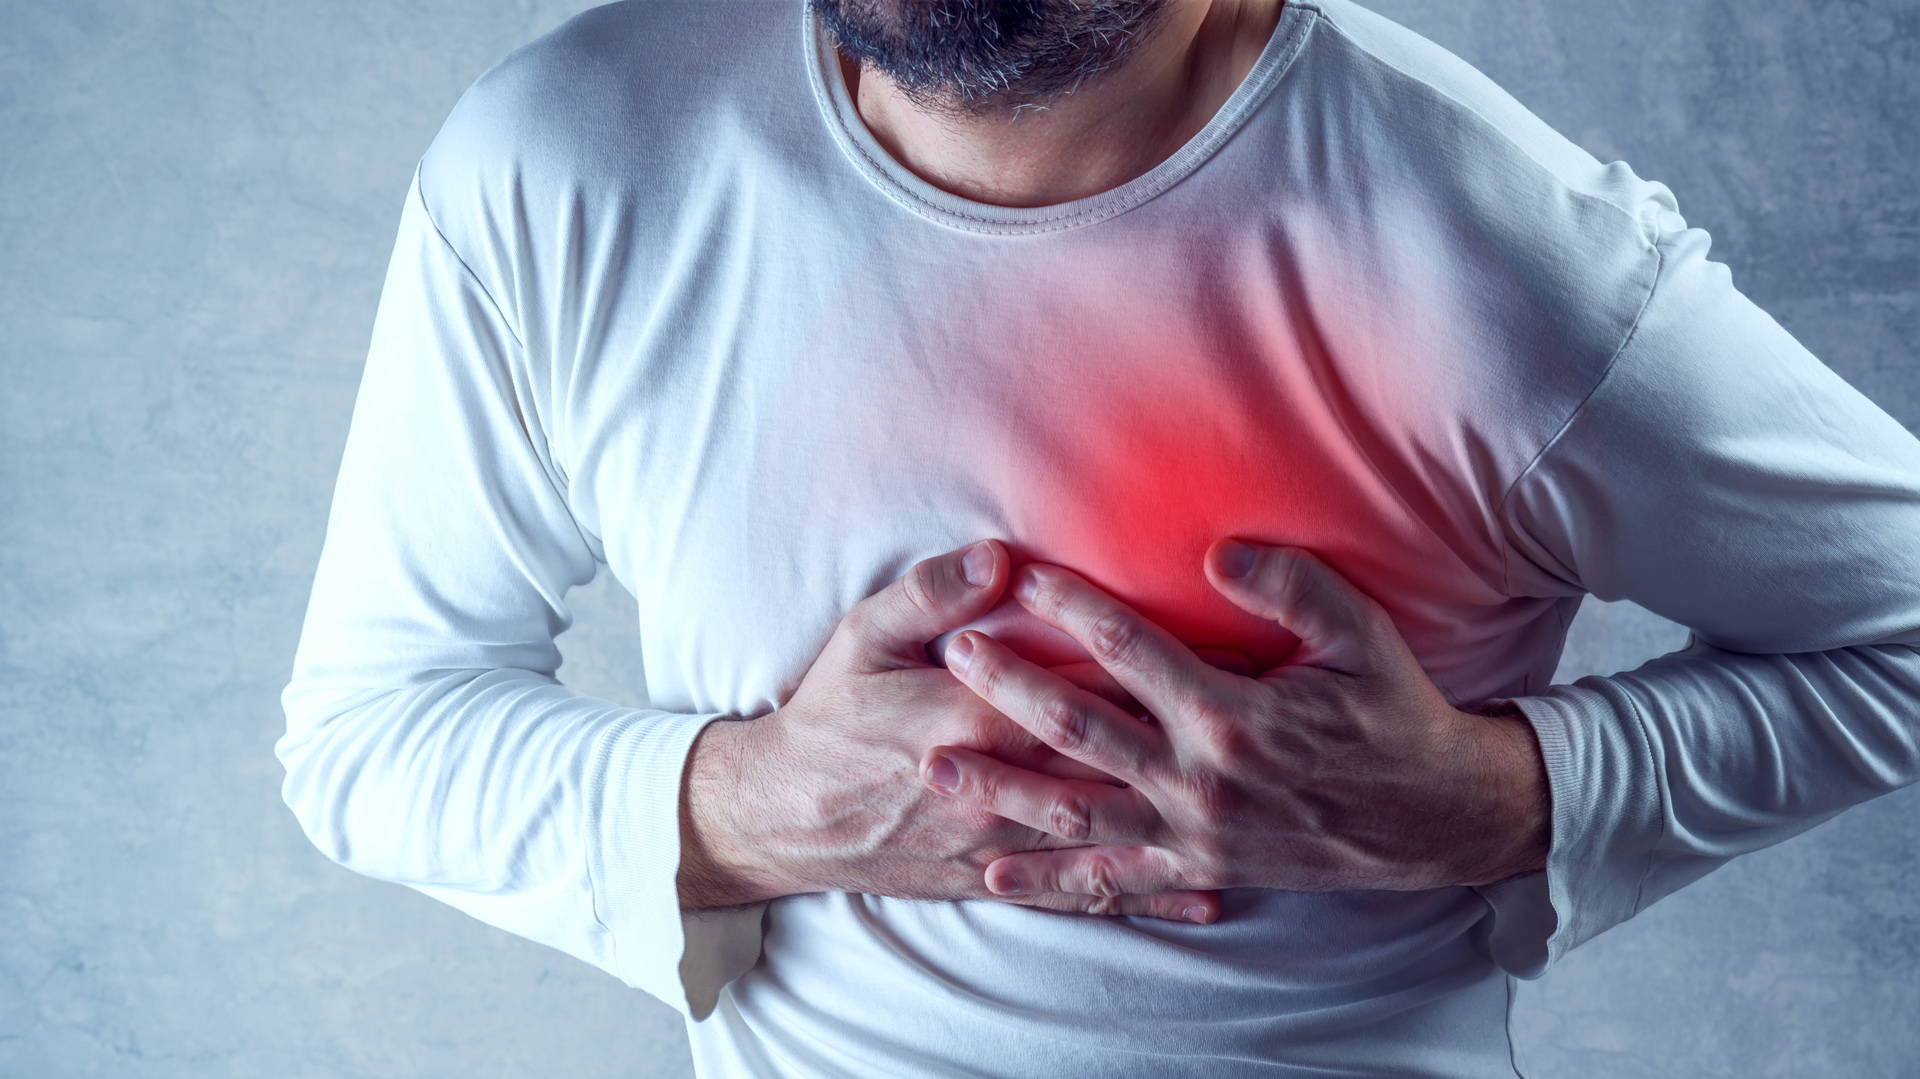 La Reanimación Cardiopulmonar (RCP) es una maniobra de emergencia para que el oxígeno pueda seguir llegando a sus órganos vitales